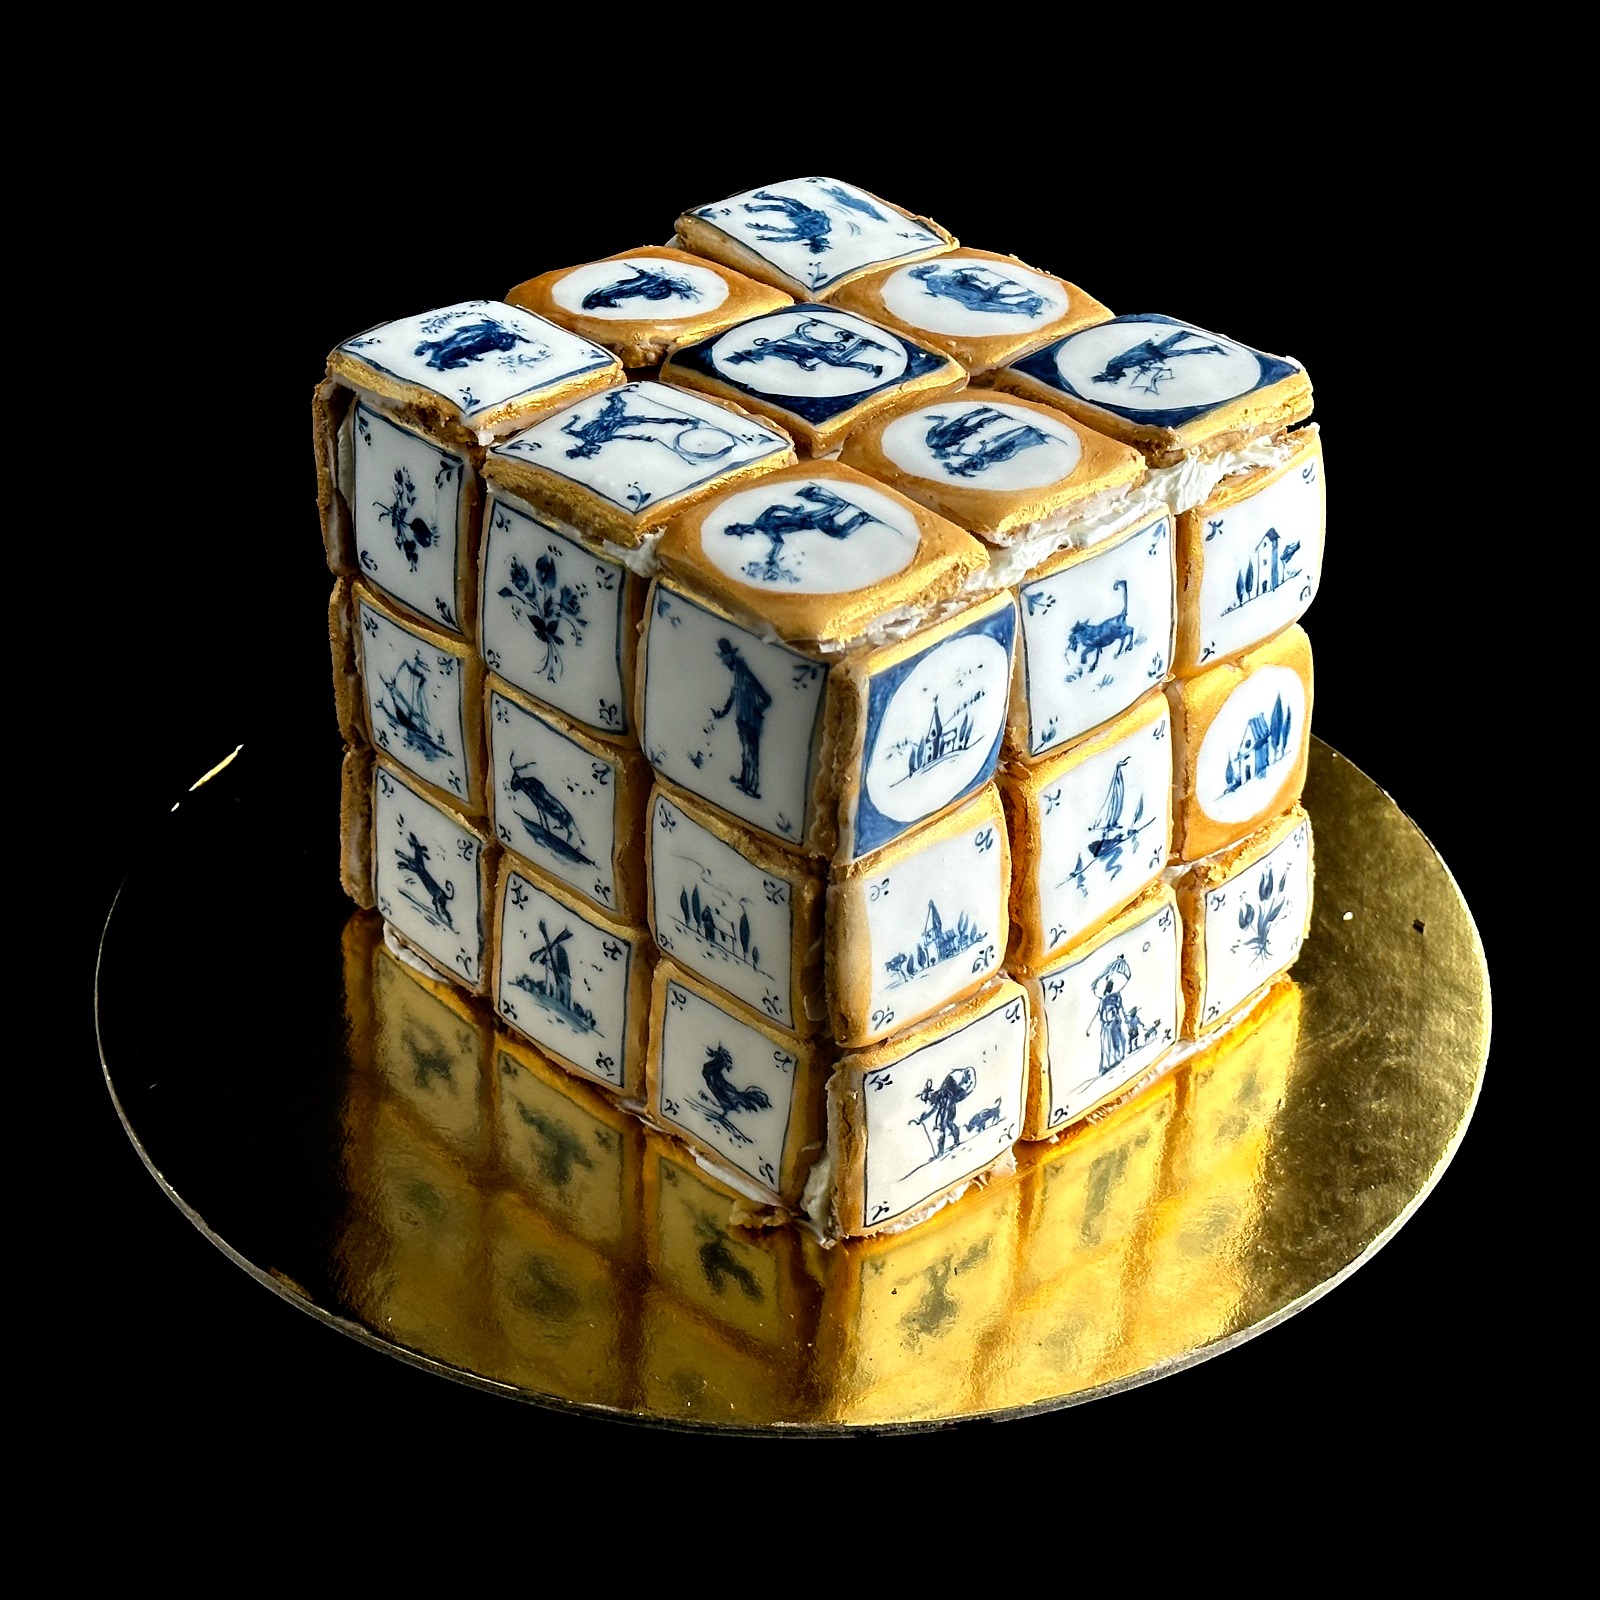 Unique Art Cake Design 8